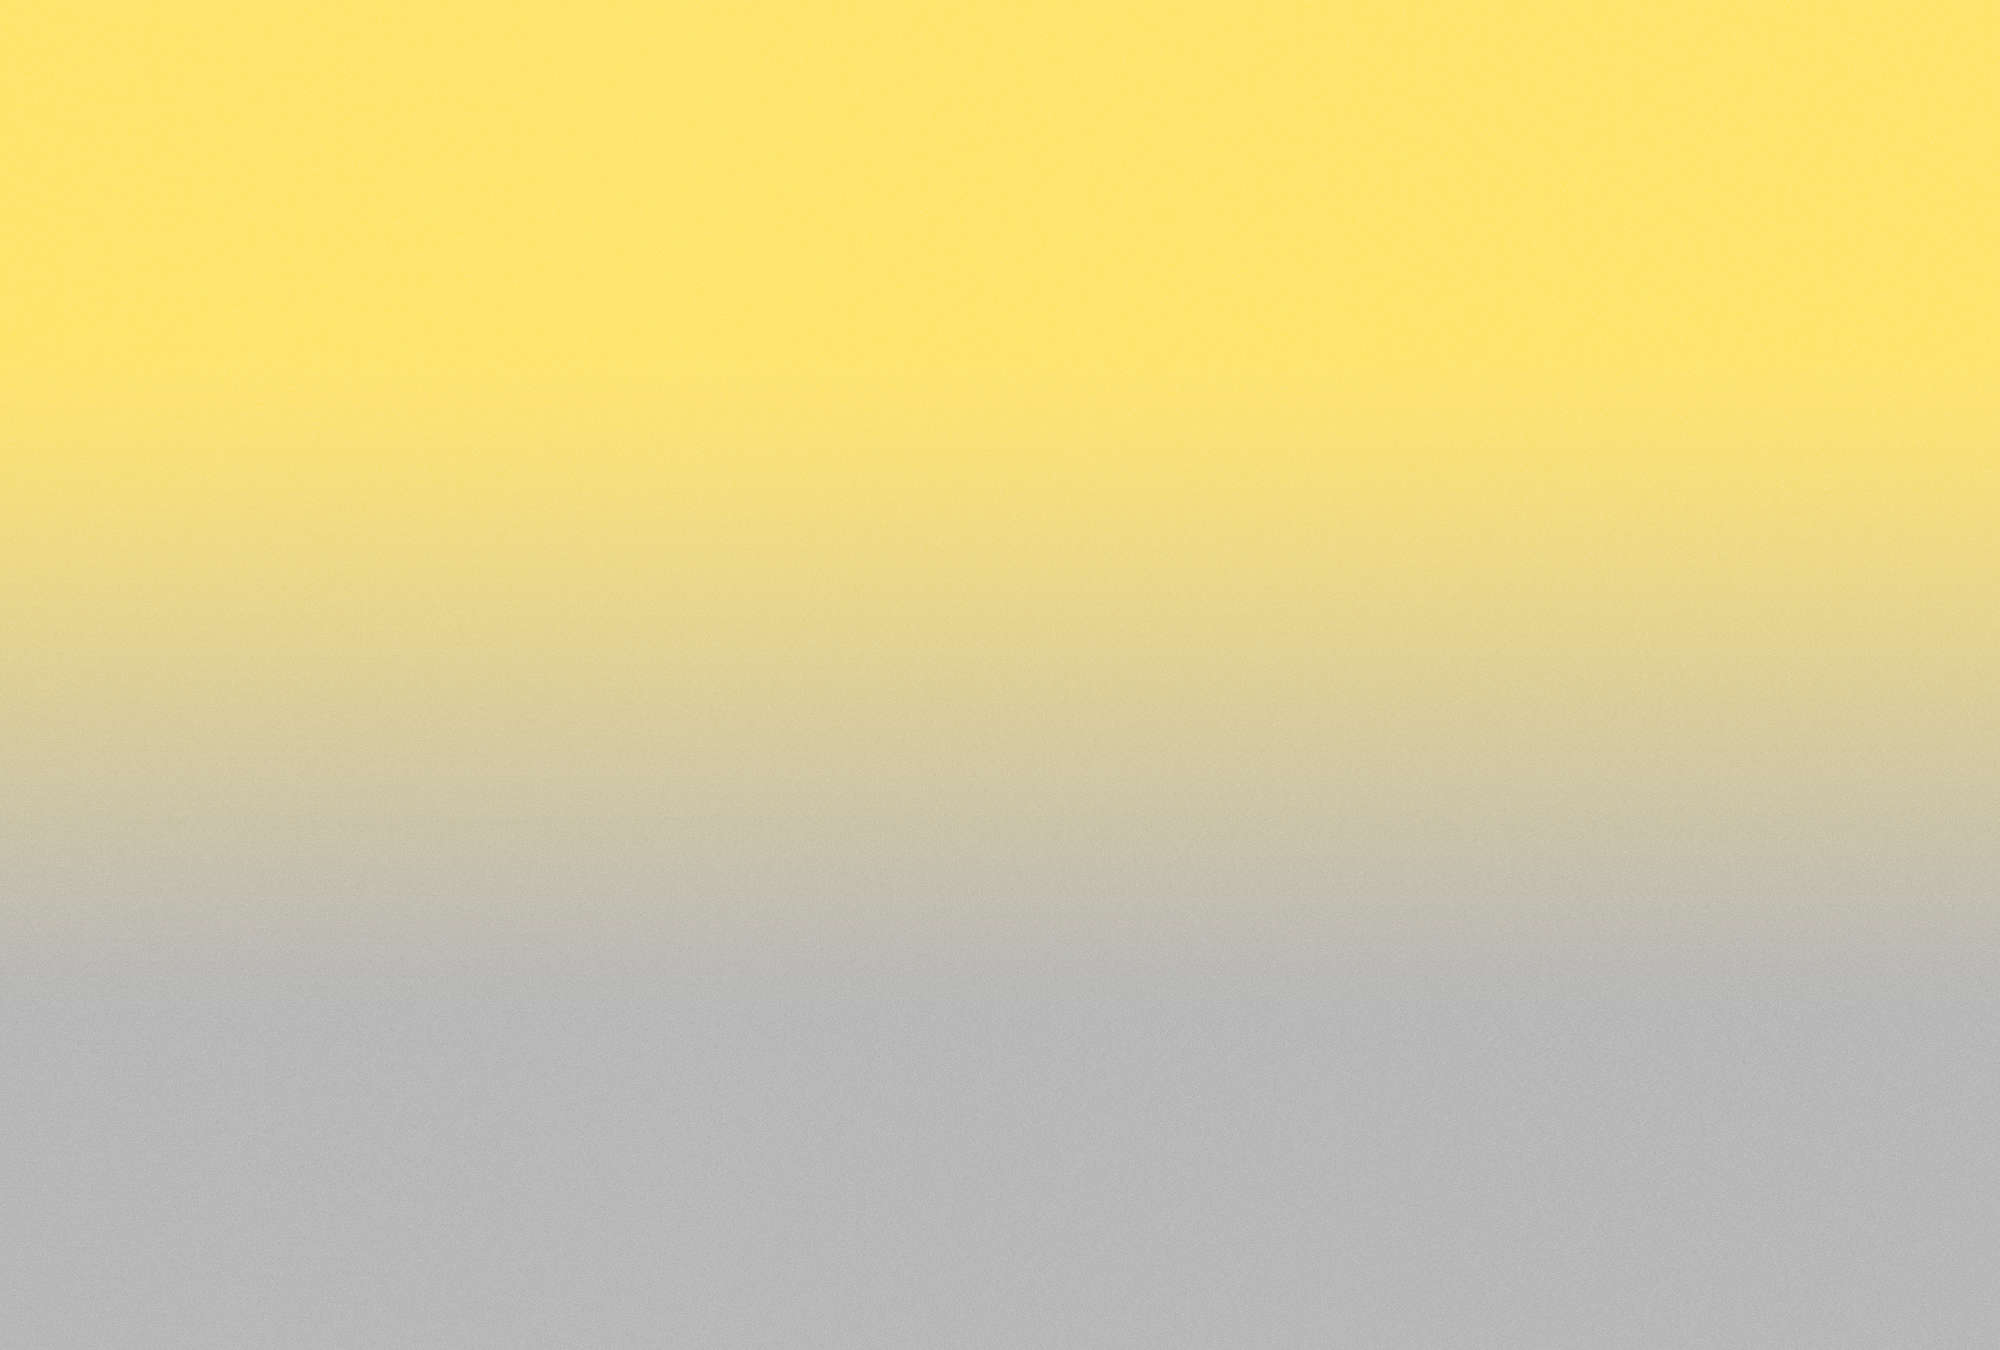             Colour Studio 1 - papier peint jaune & gris Couleurs tendance effet Ombre
        